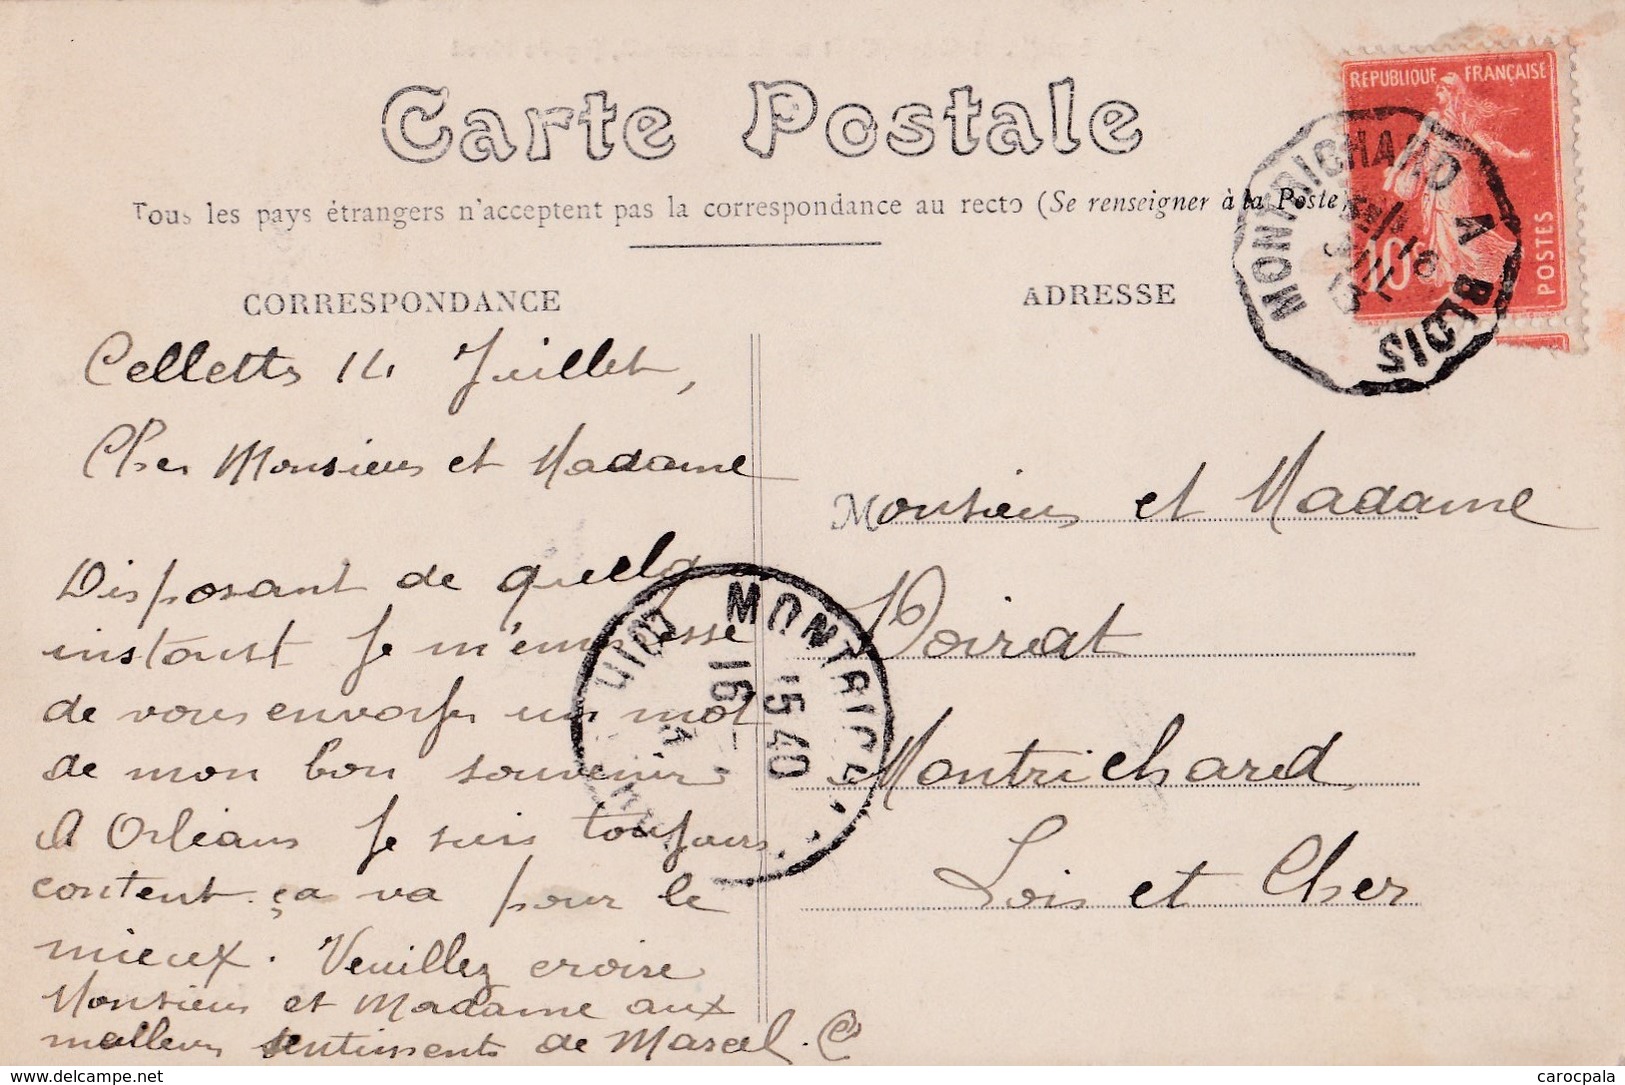 Carte 1910 CELLETTES / CHATEAU DE BOUSSEUIL , Façade Nord - Autres & Non Classés